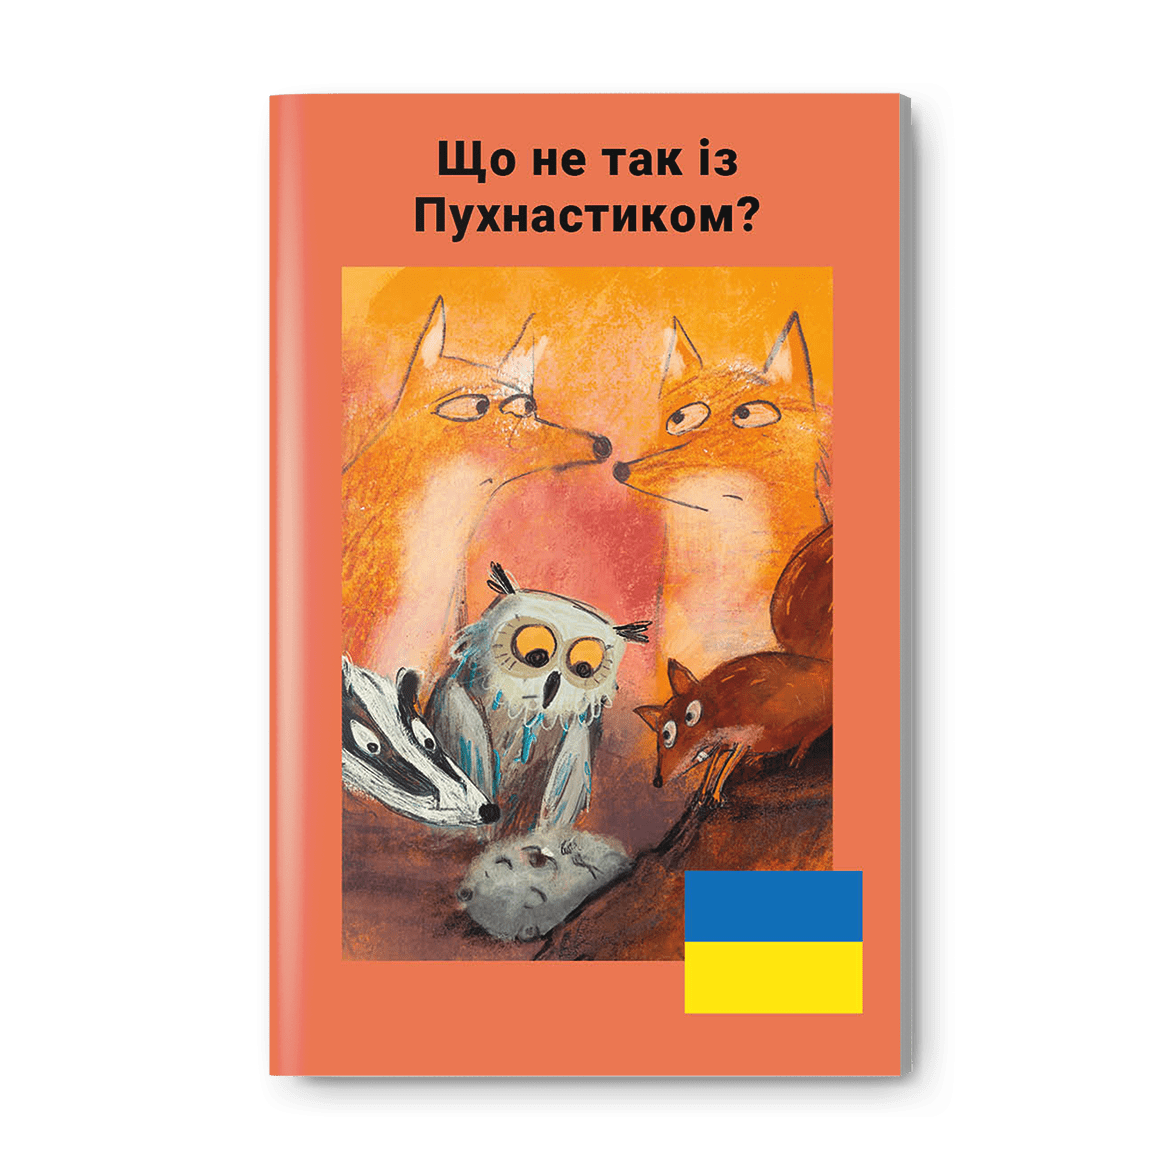 Ukrainische Ausgabe: Was ist mit Wuschel los?